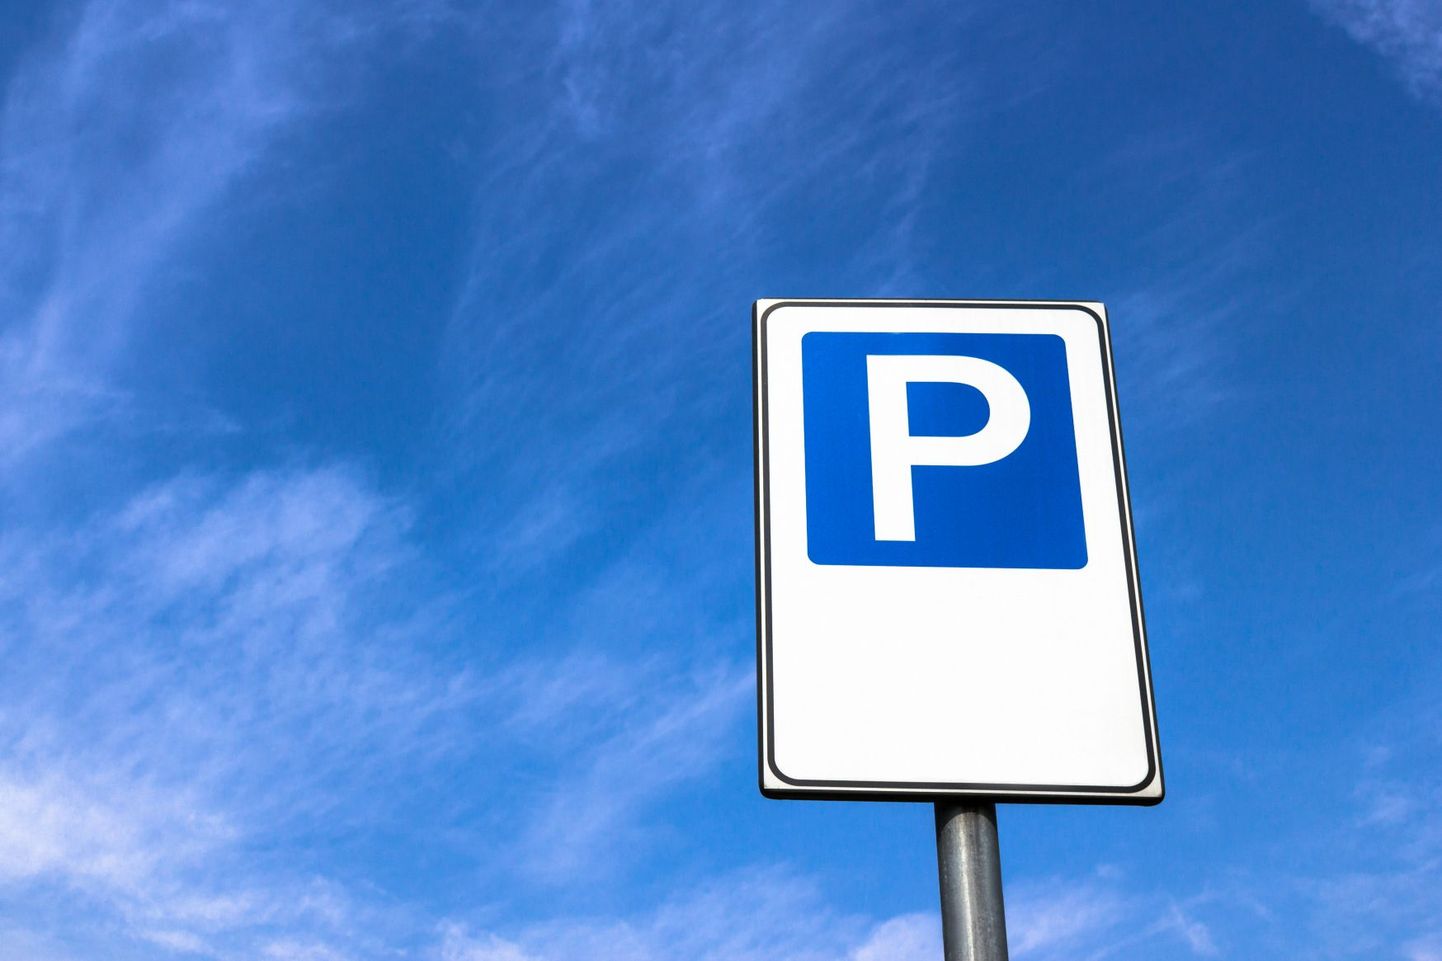 Nüüdsest saab omavalitsusele kuuluvates parklates Jõhvi kesklinnas taas tasuta parkida.